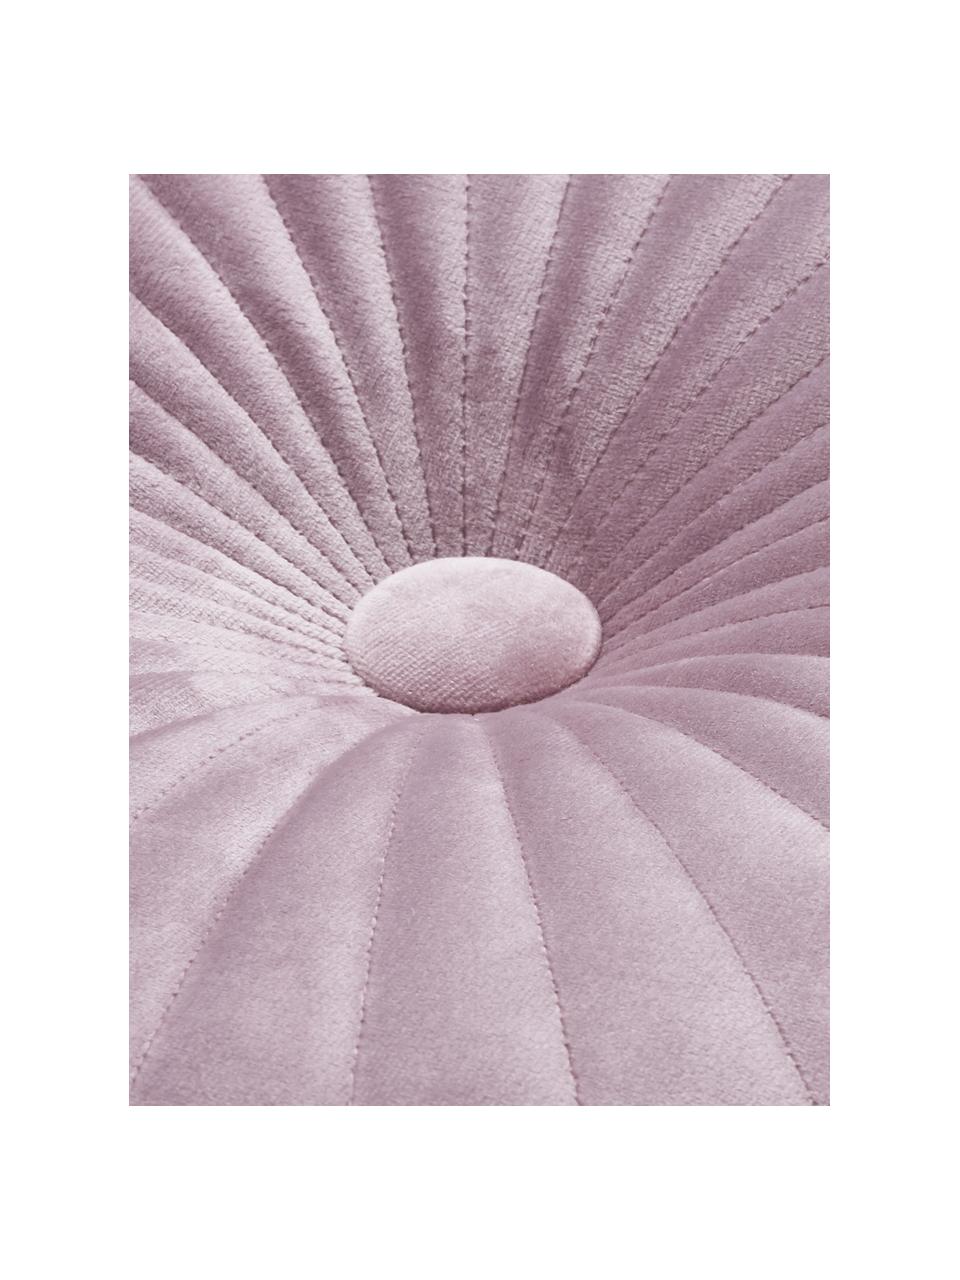 Rundes glänzendes Samt-Kissen Monet in Altrosa, Bezug: 100% Polyestersamt, Lavendel, Ø 40 cm